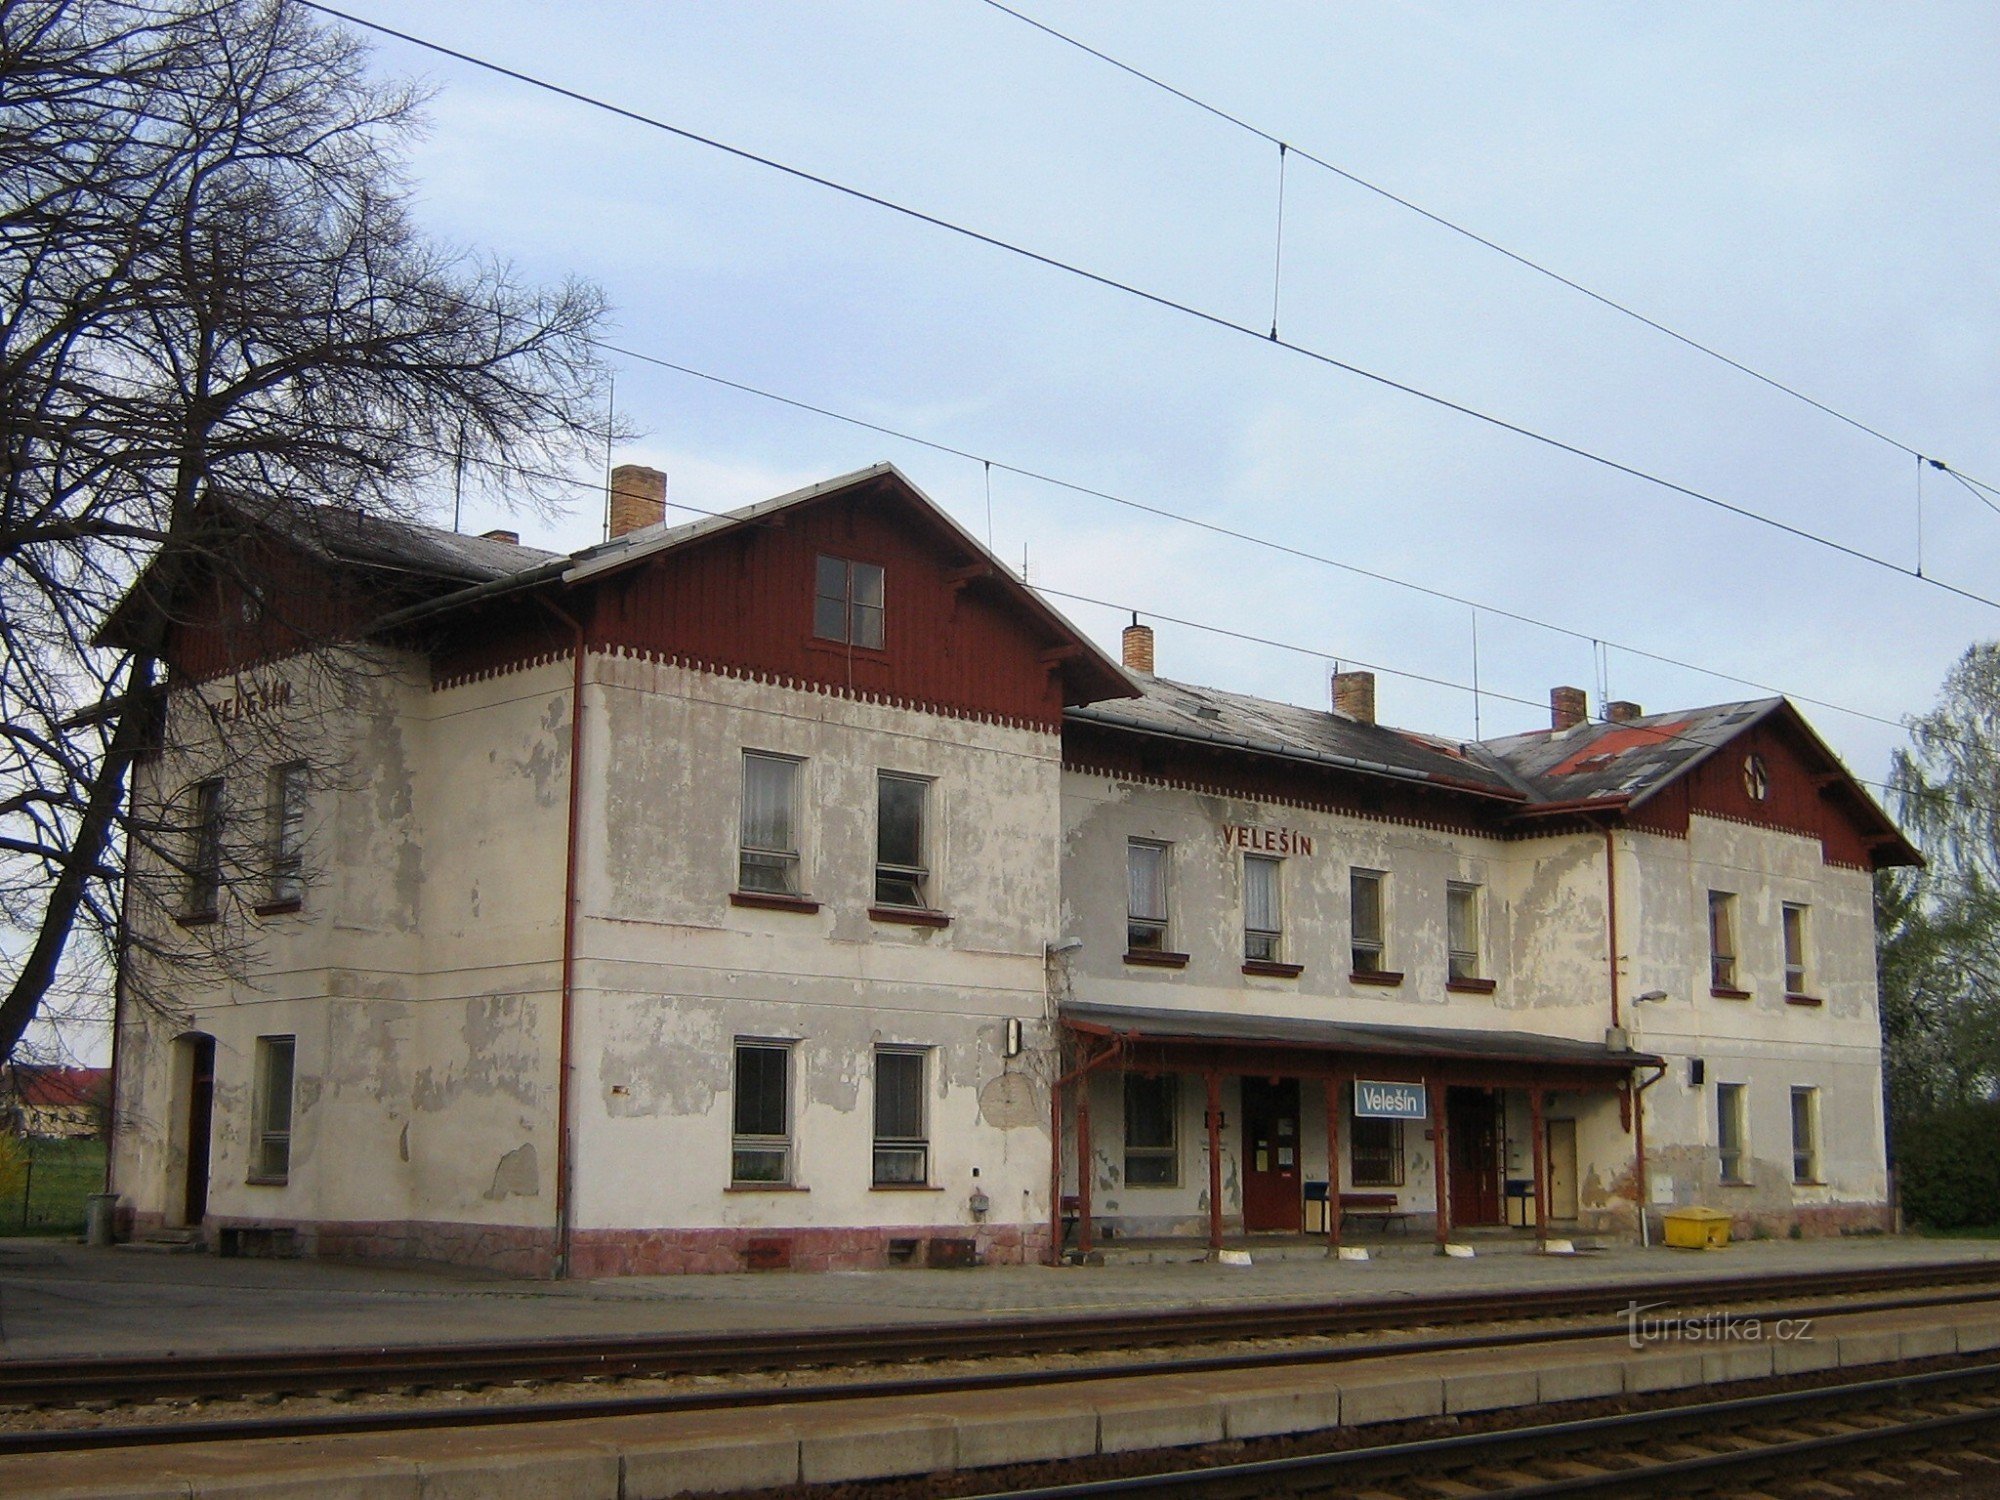 Velesín - ga đường sắt